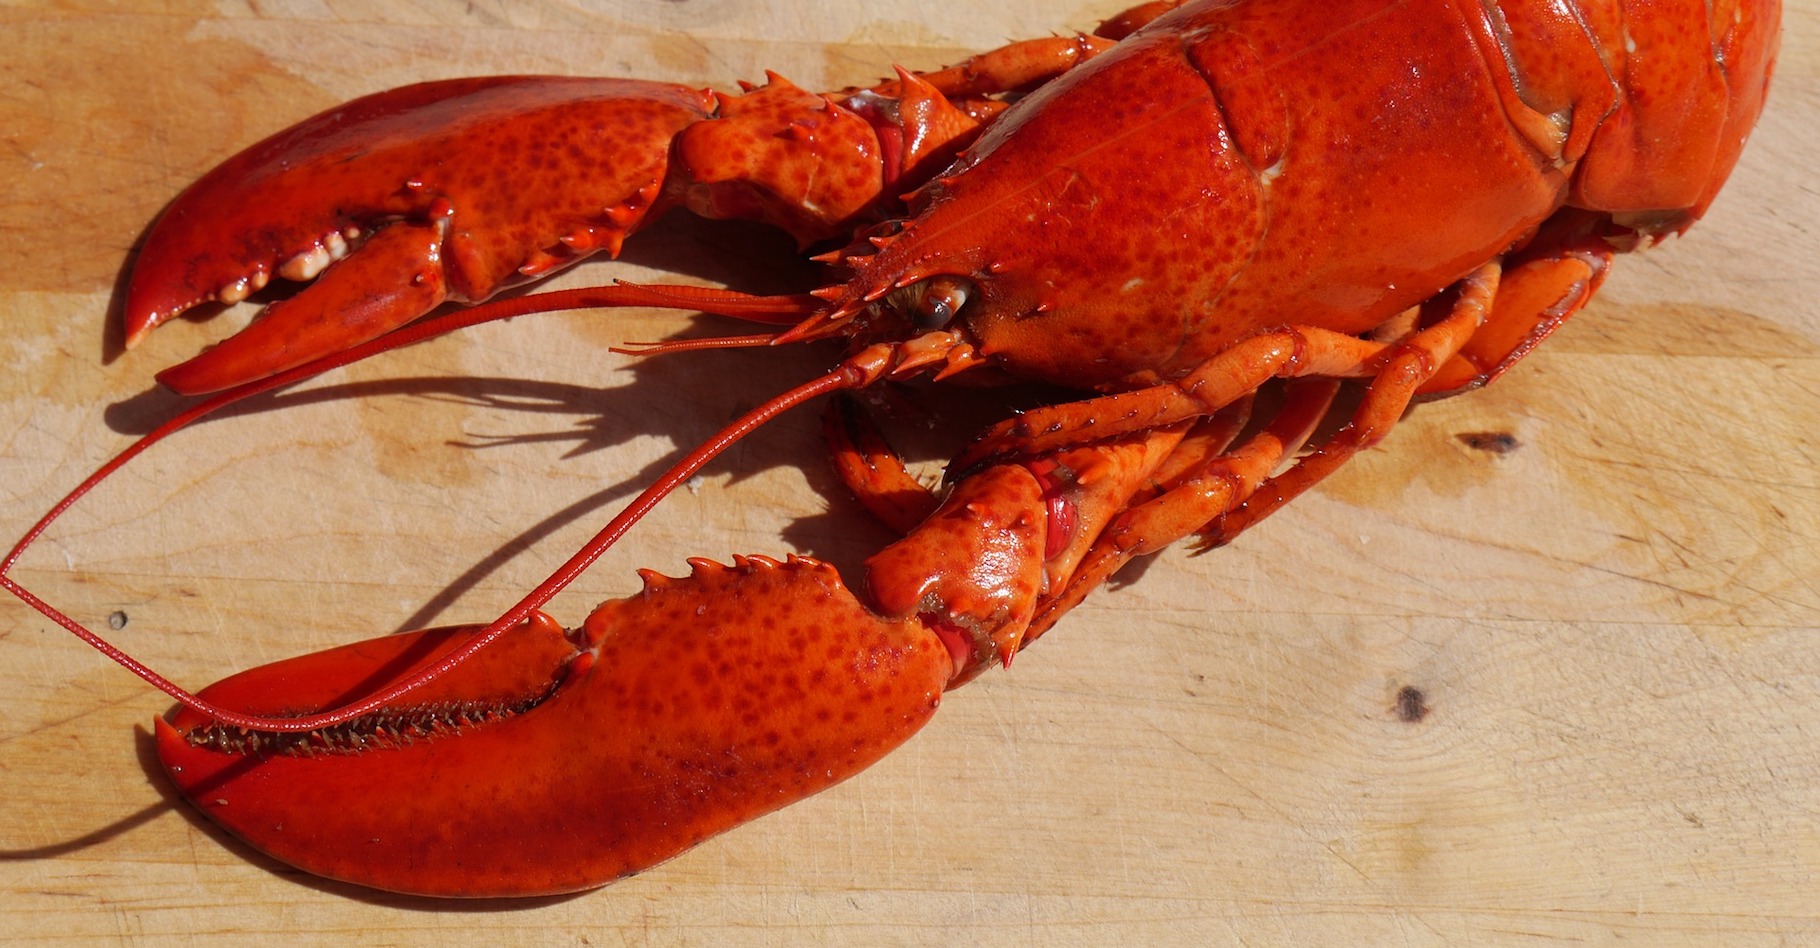 Le homard se différencie de la langouste, notamment par ses pinces épaisses et sa carapace lisse. © ndermello, Pixabay, CC0 Public Domain